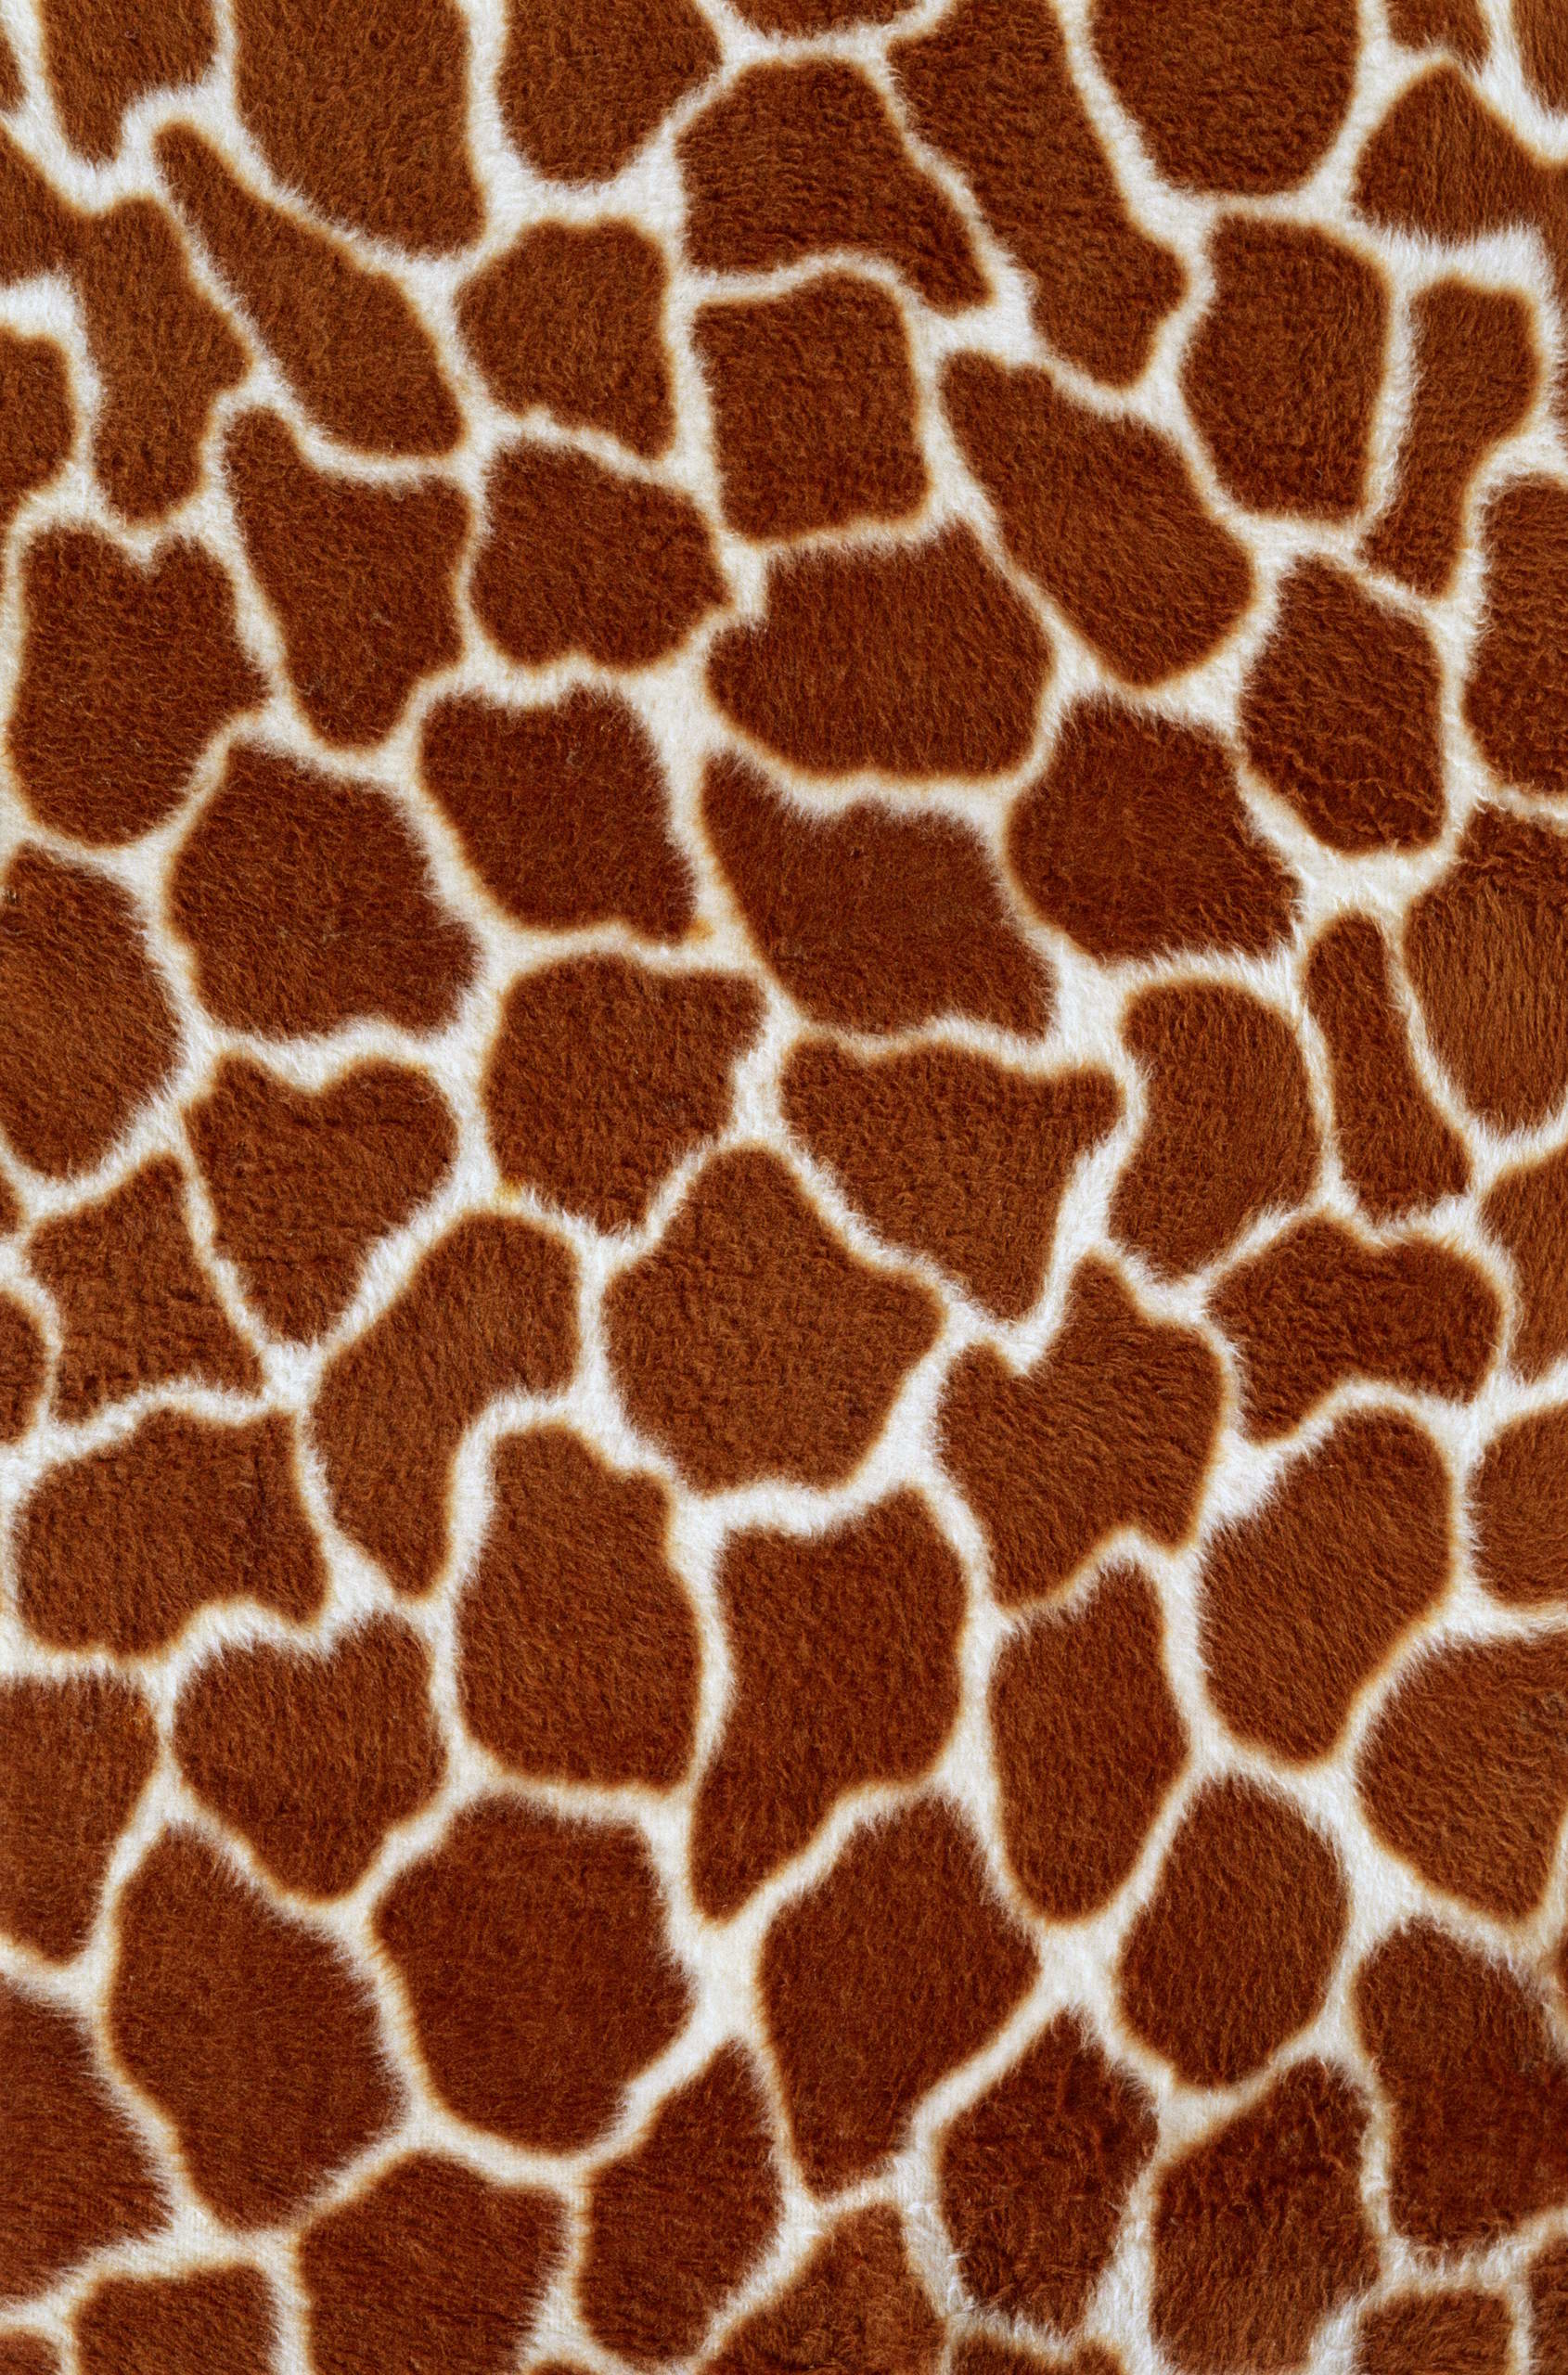  , skin giraffe, texture fur, fur texture background, background